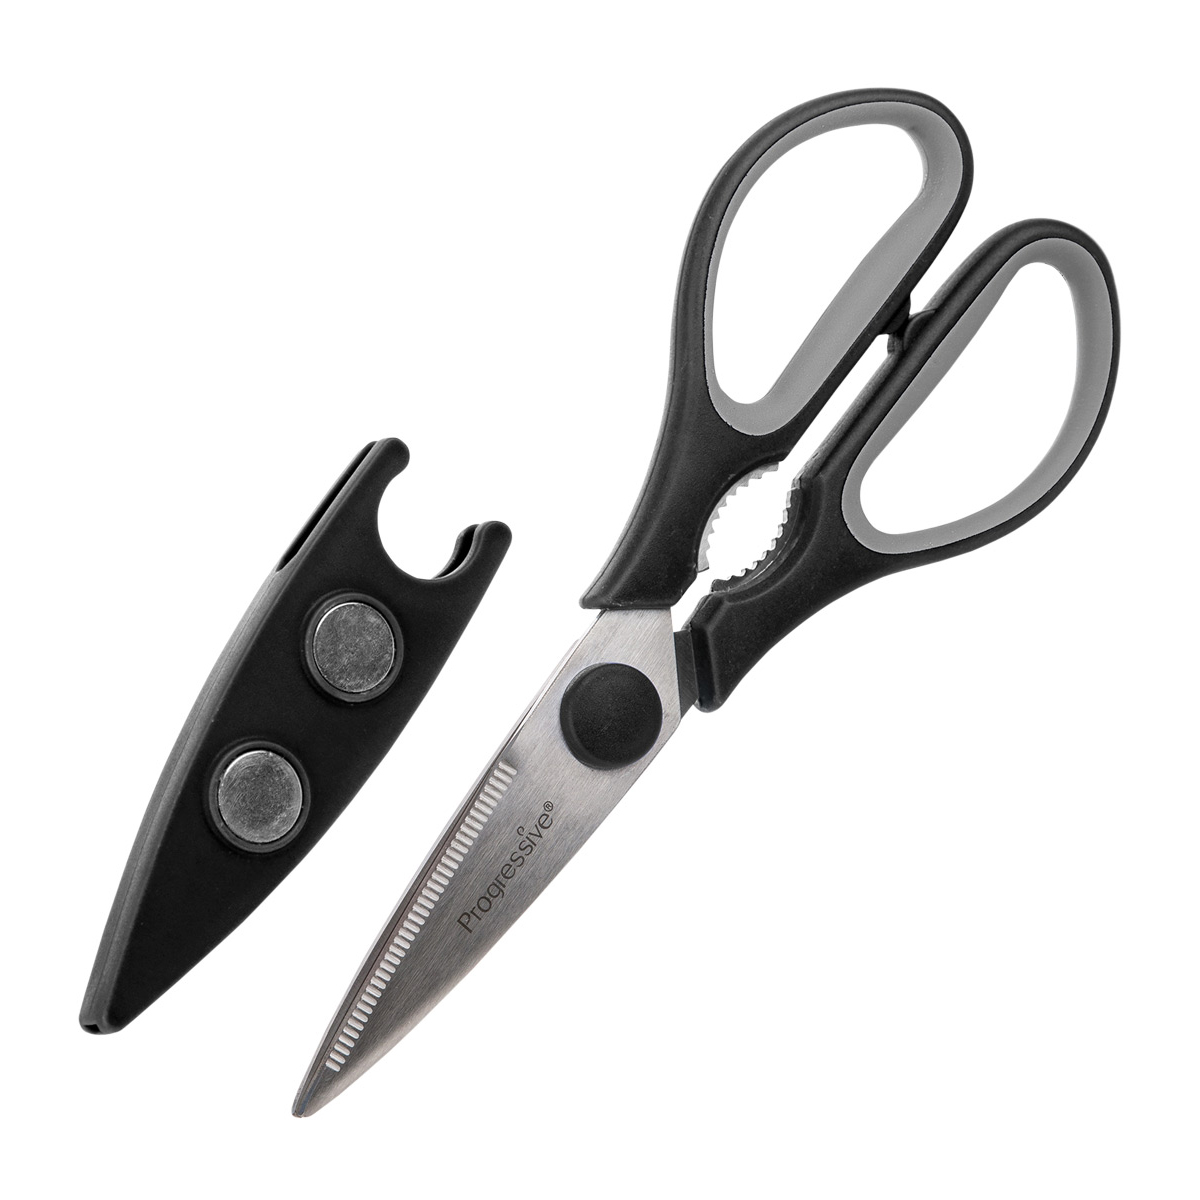 https://www.containerstore.com/catalogimages/410343/10084726-Progressive-Scissors-VEN3.jpg